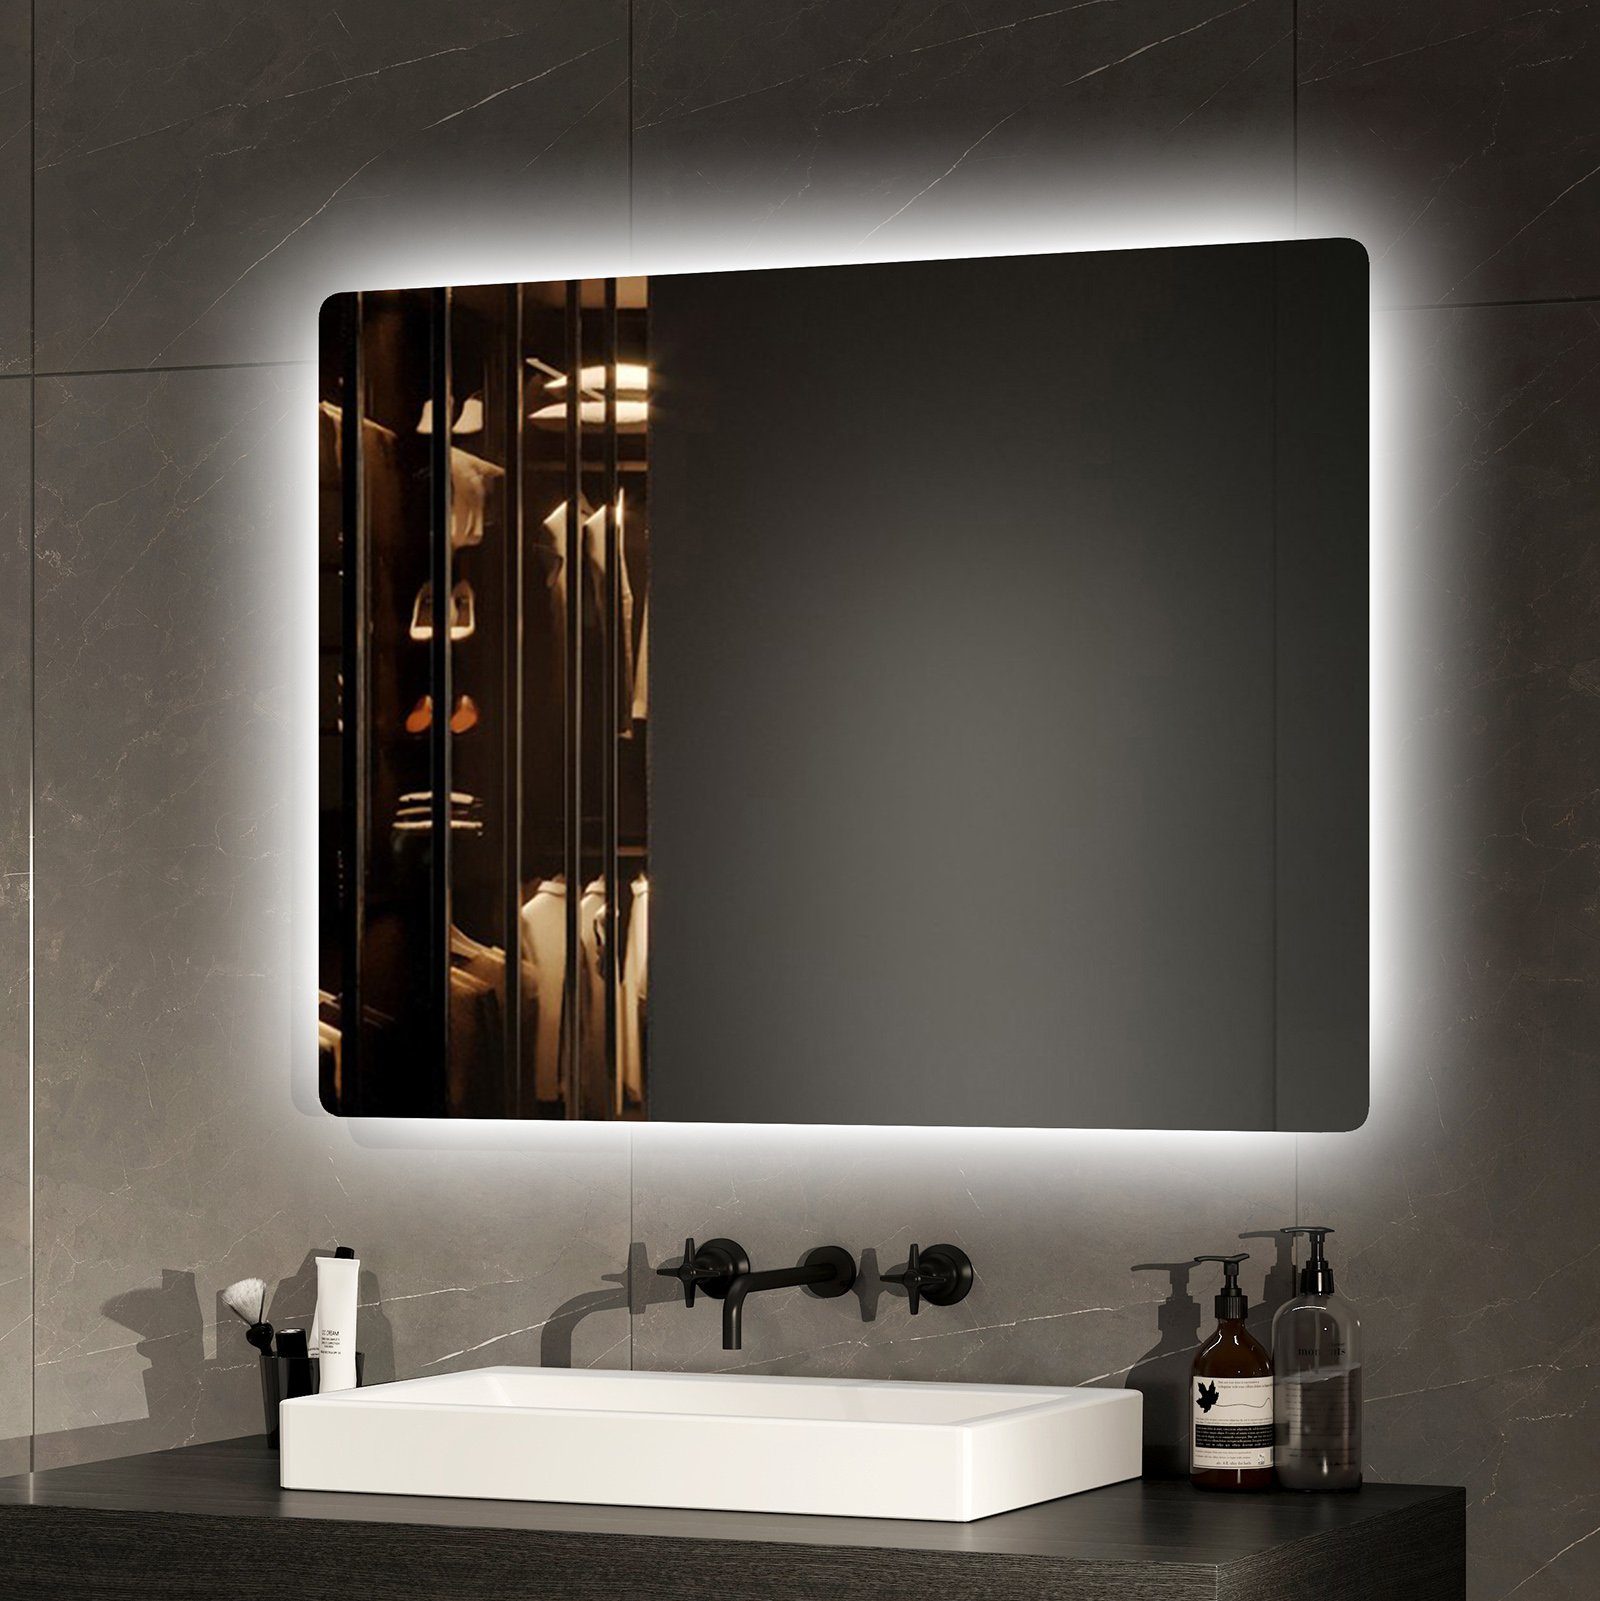 EMKE Badspiegel mit Beleuchtung Badezimmerspiegel Wandspiegel mit LED (Wandschalter, Modell 09, Vertikal und Horizontal möglich), Kaltweißes Licht 6500K 70-80cm IP44